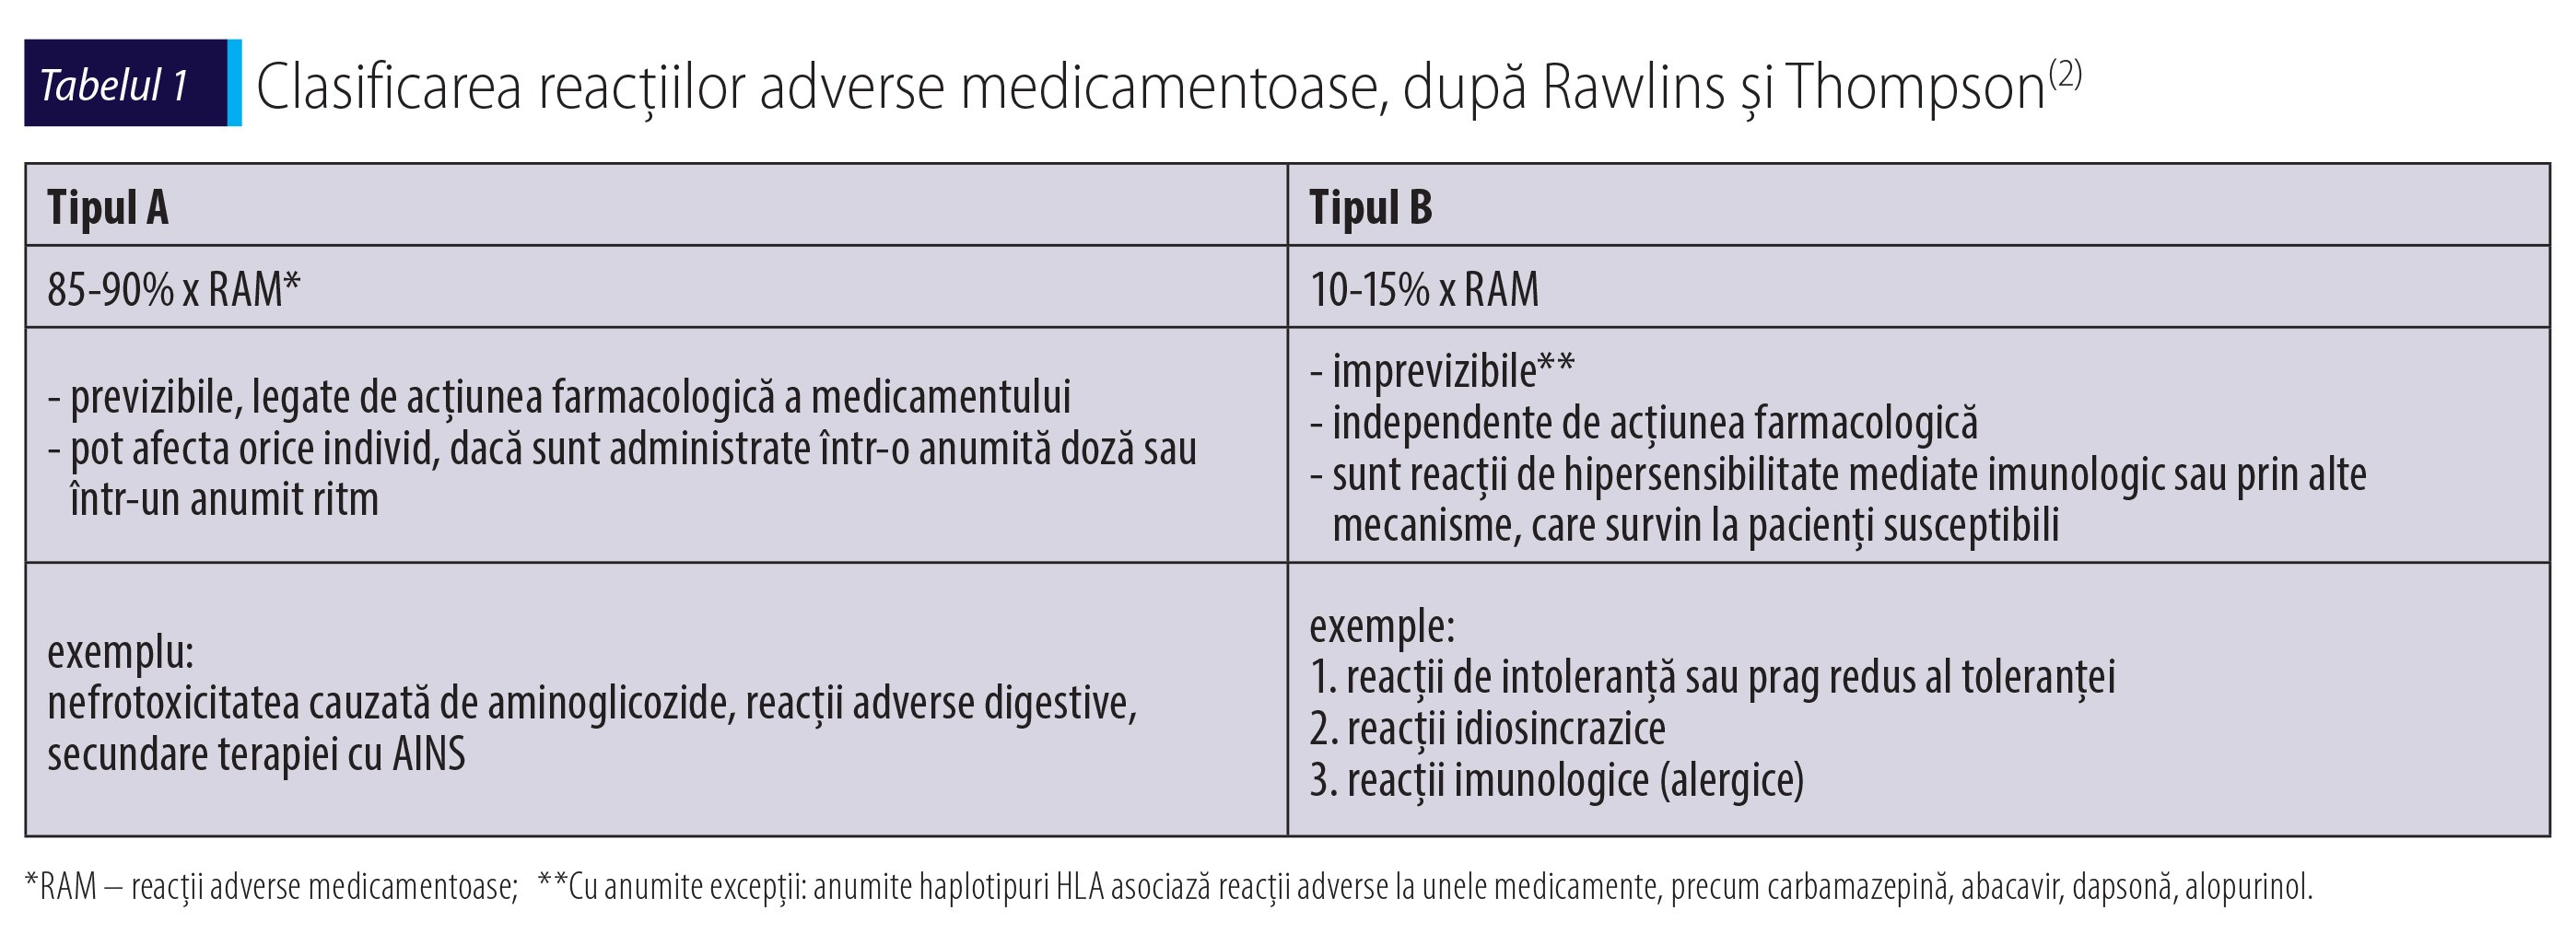 Tabelul 1 Clasificarea reacțiilor adverse medicamentoase, după Rawlins și Thompson(2)